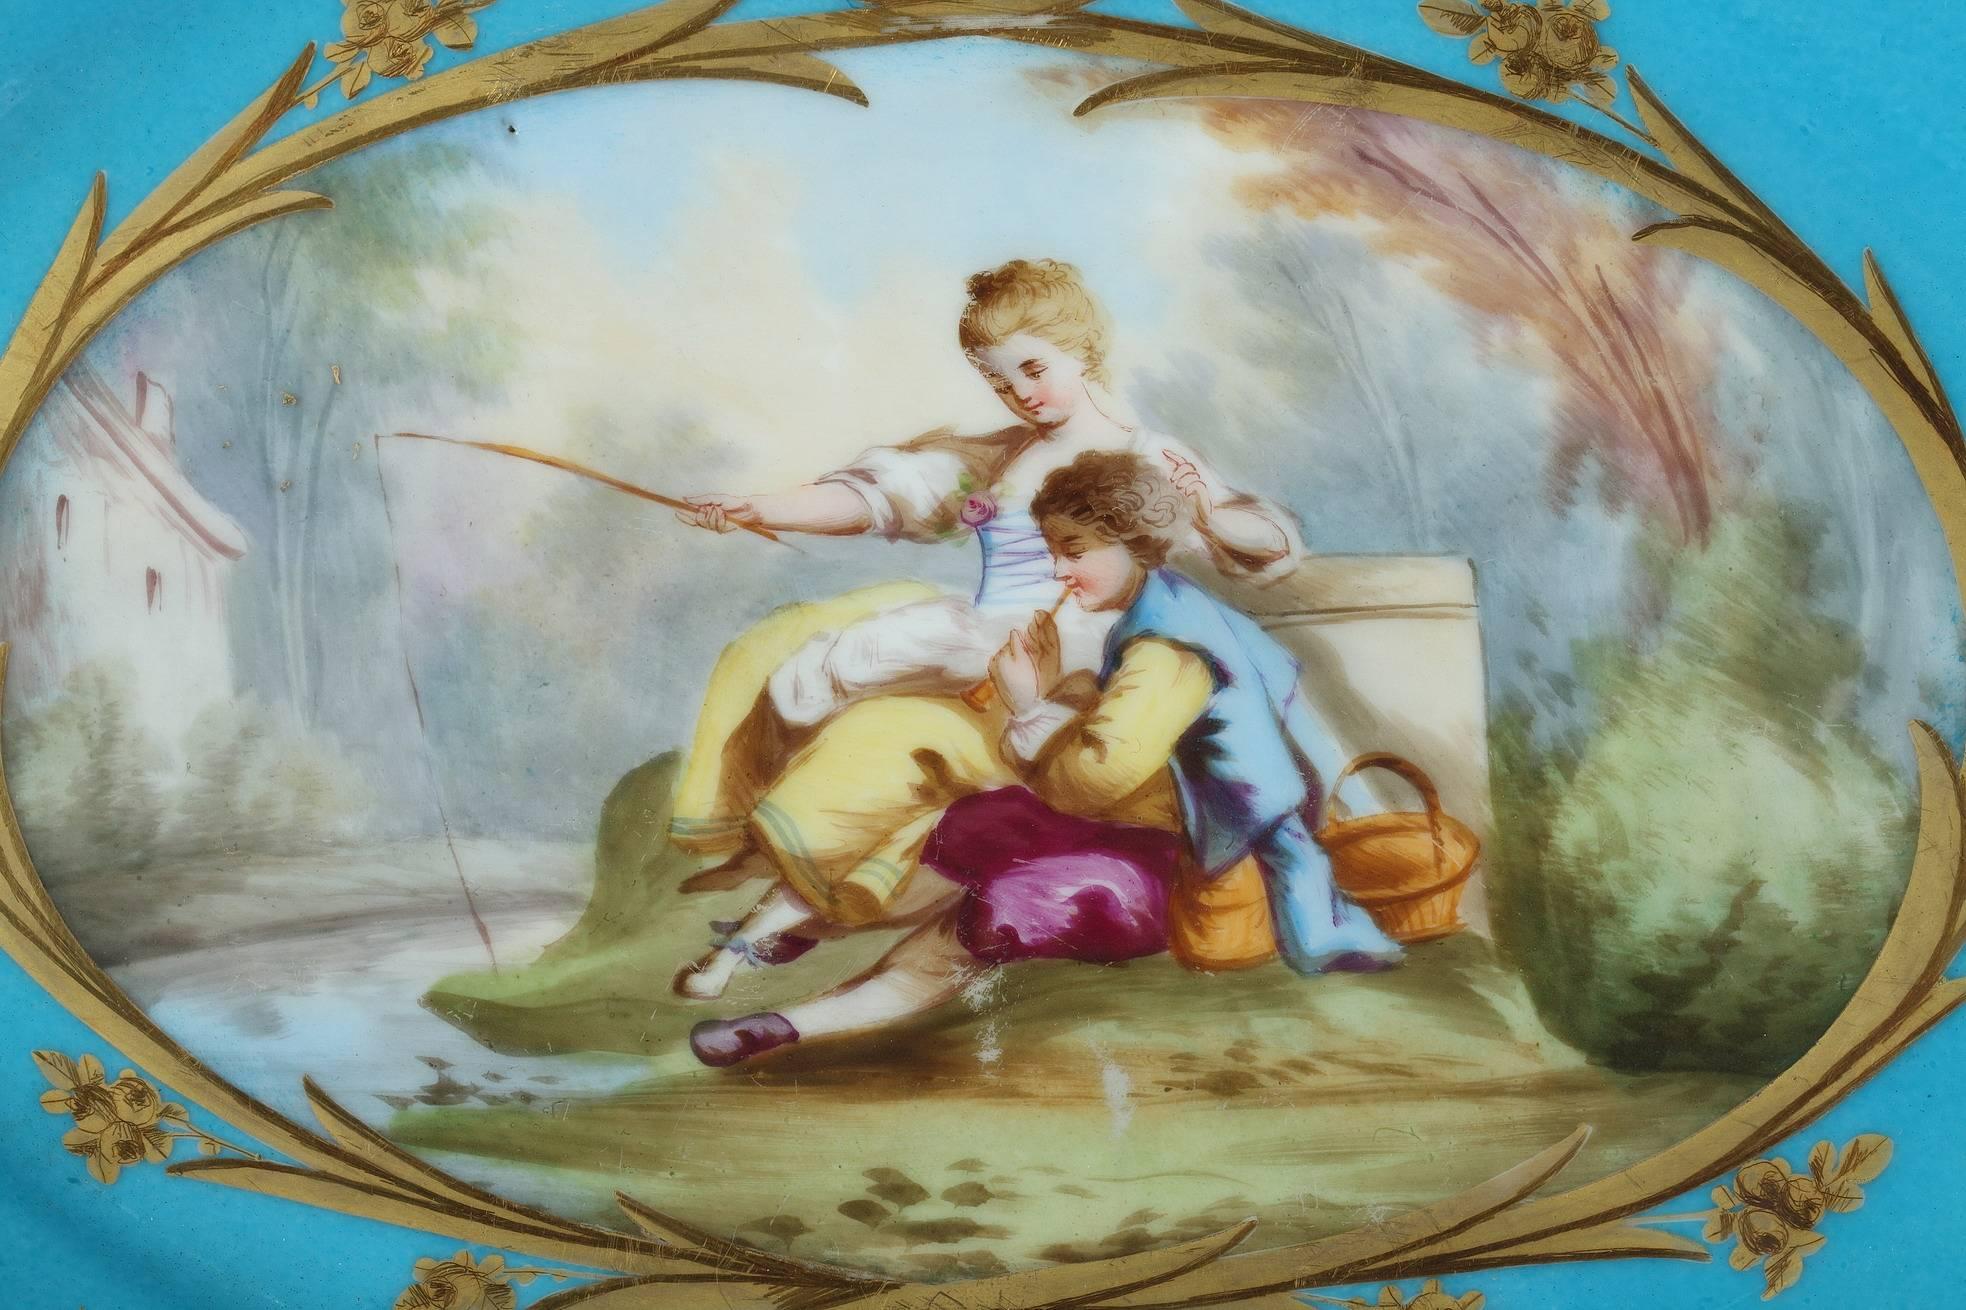 Tasse ovale en porcelaine bleue à décor polychrome composé d'un grand cartouche à bordures dorées représentant un homme et une jeune femme dans un paysage, assis sur l'herbe près d'un lac. La femme est en train de pêcher pendant que son amant joue